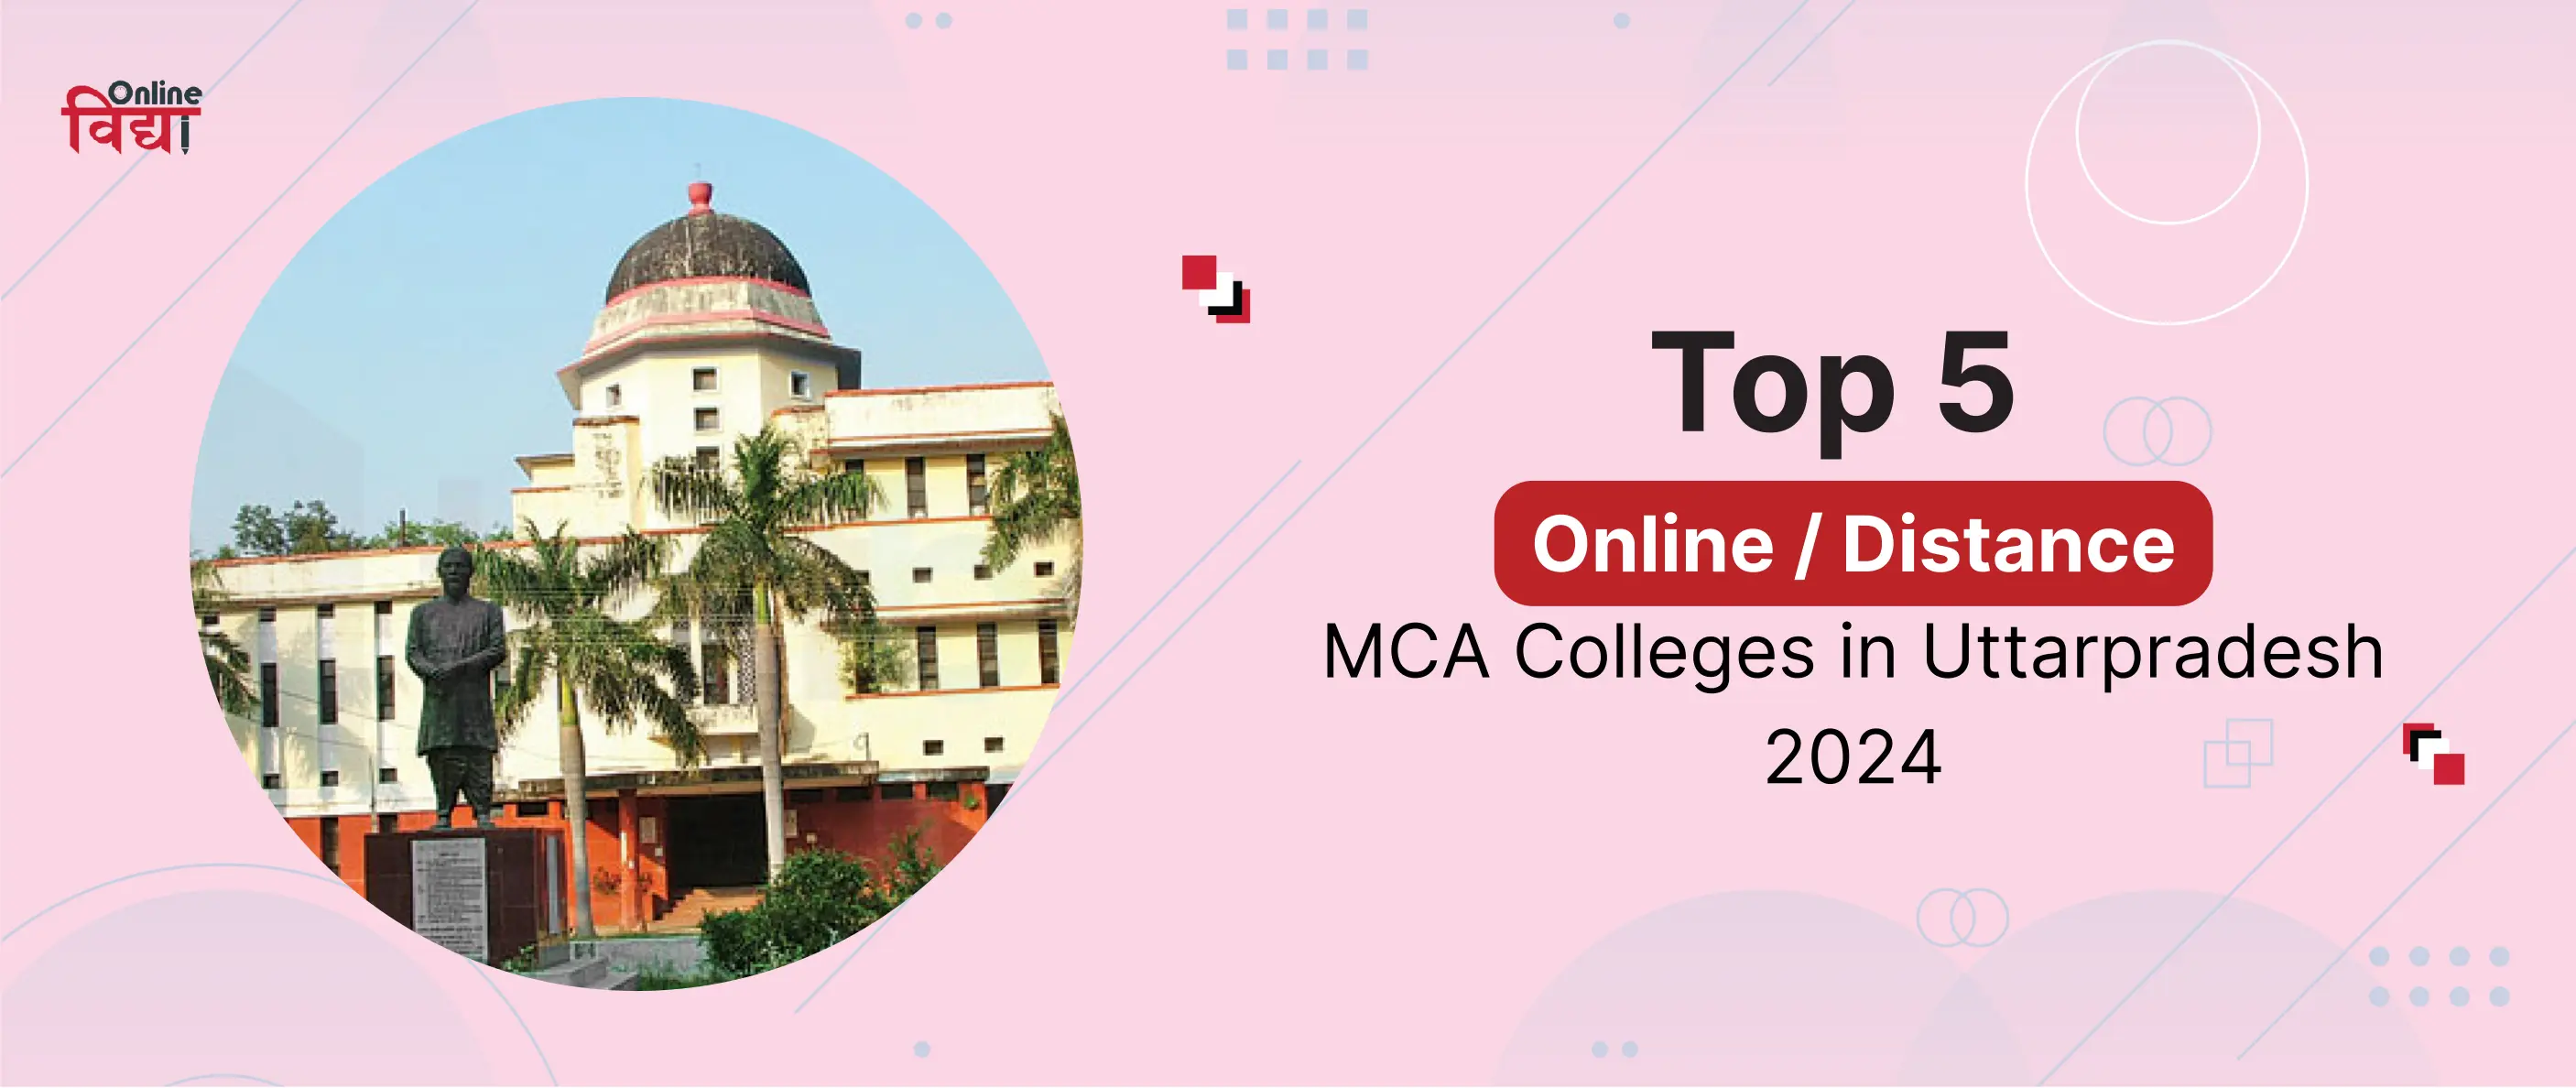 Top 5 Online/Distance MCA Colleges in Uttarpradesh 2024